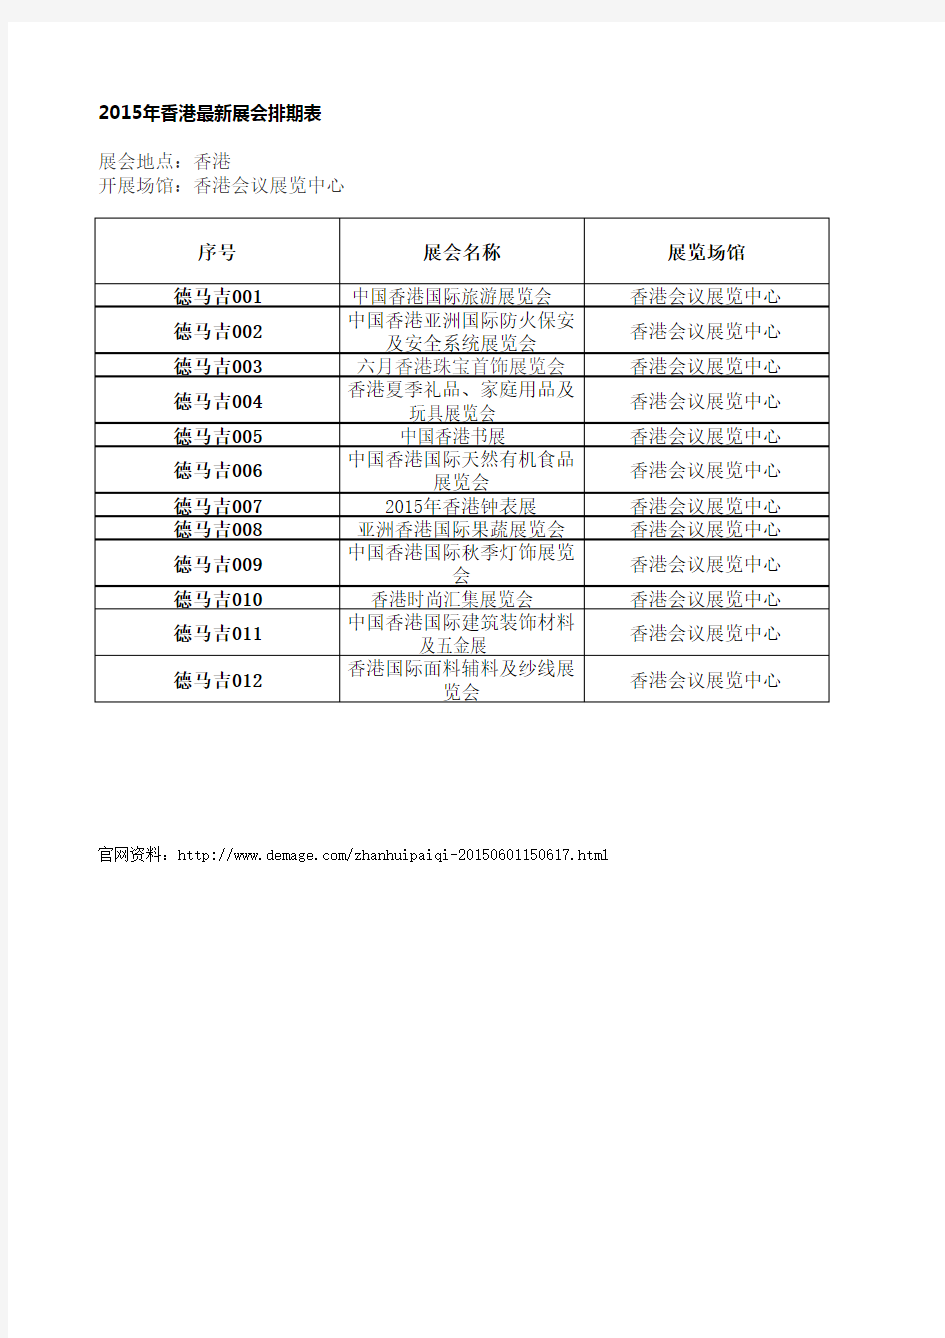 2015年香港会议展览中心最新展会排期表